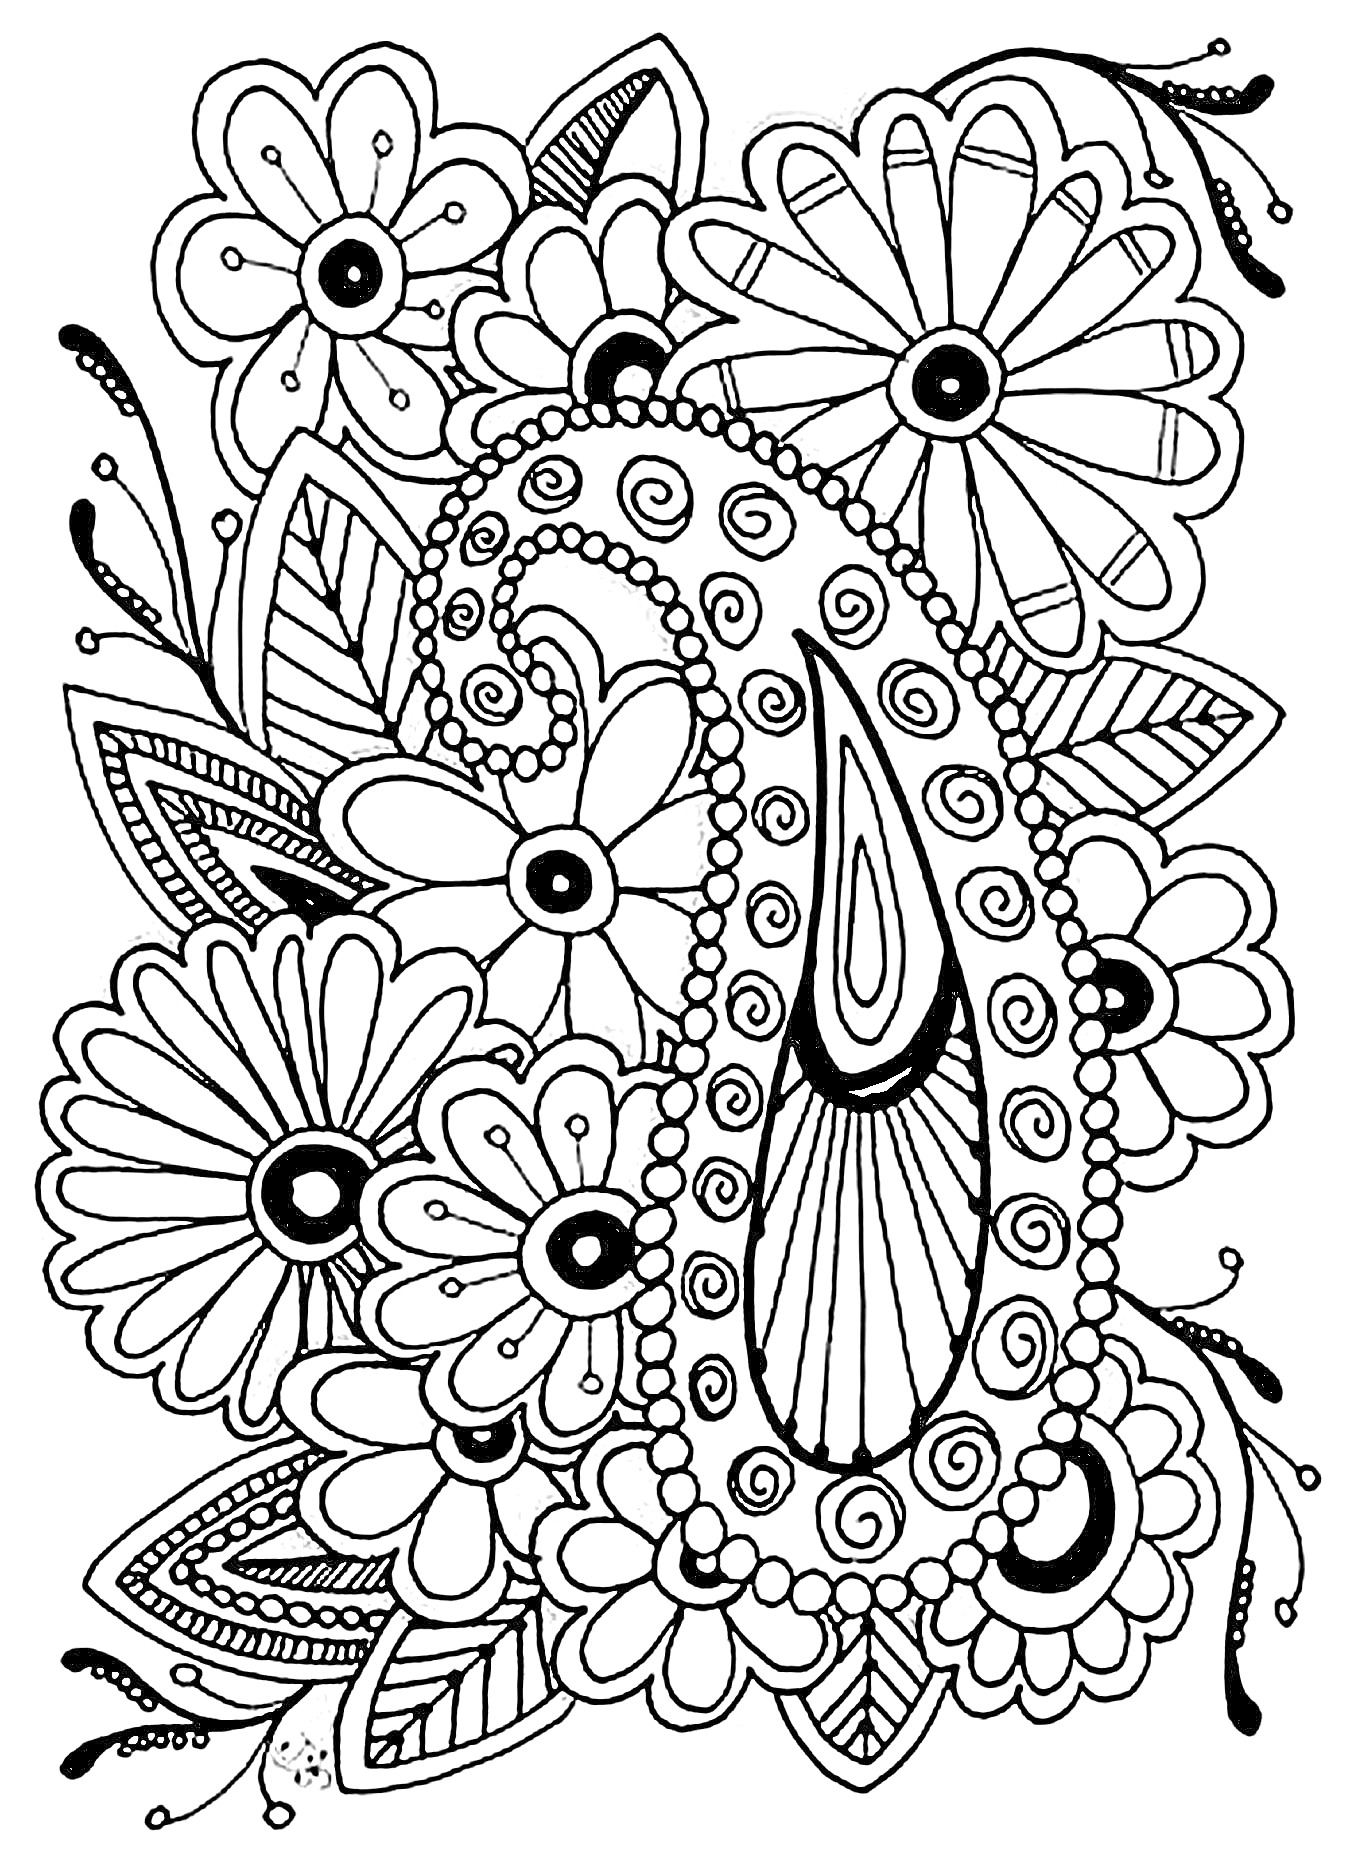 Раскраска Цветочный узор с множеством цветков и узоров, включая элементы капли и спиралей